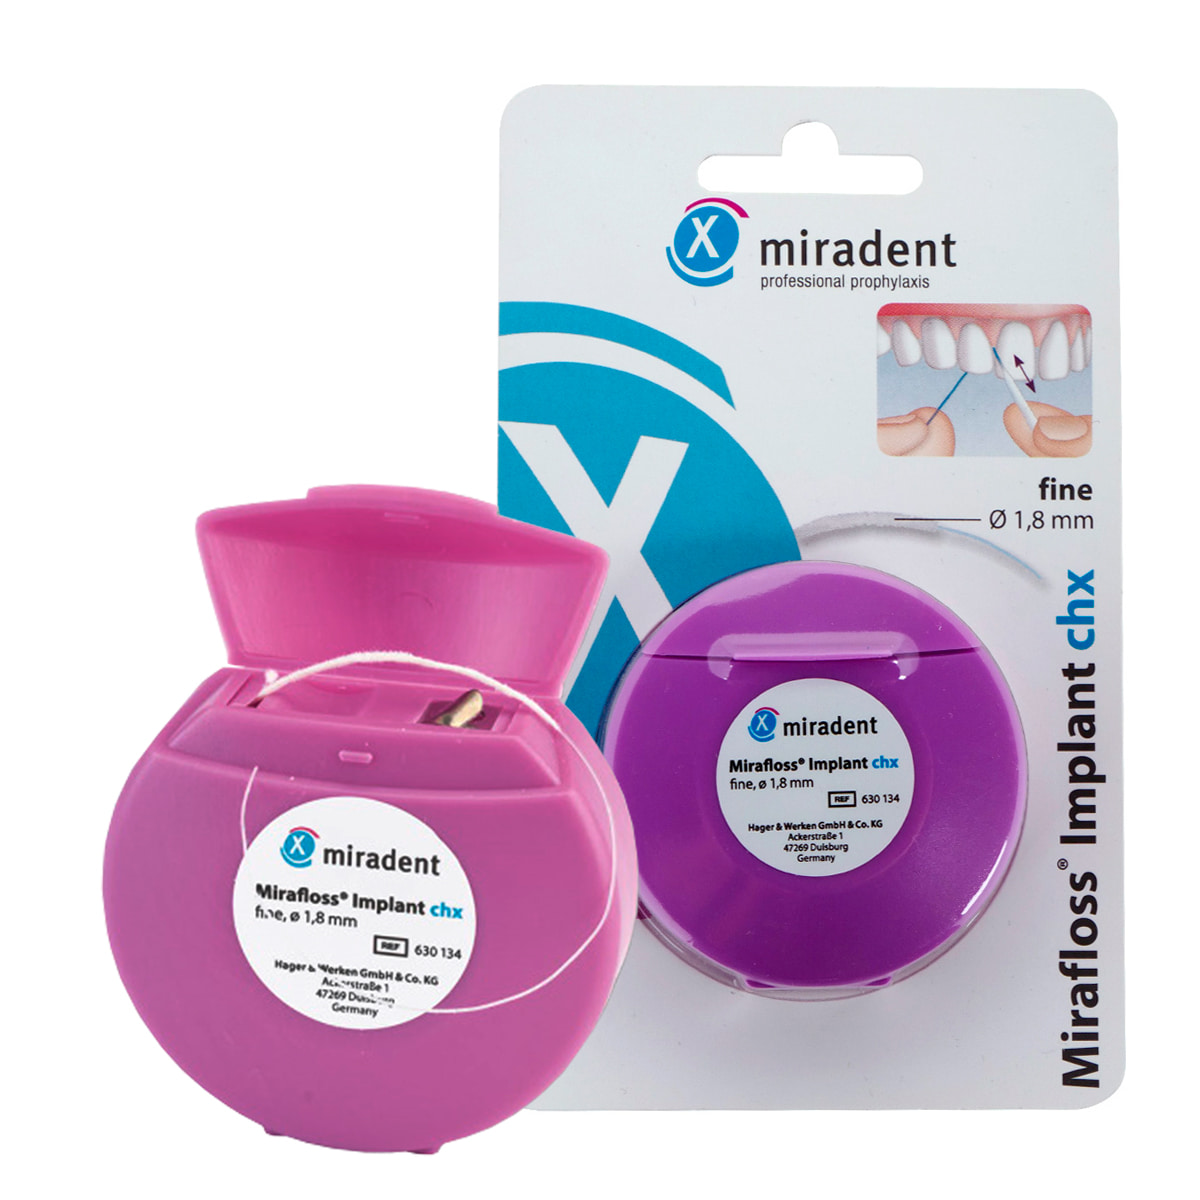 Зубная нить miradent Mirafloss Implant chx 1,8 мм для имплантов/брекетов